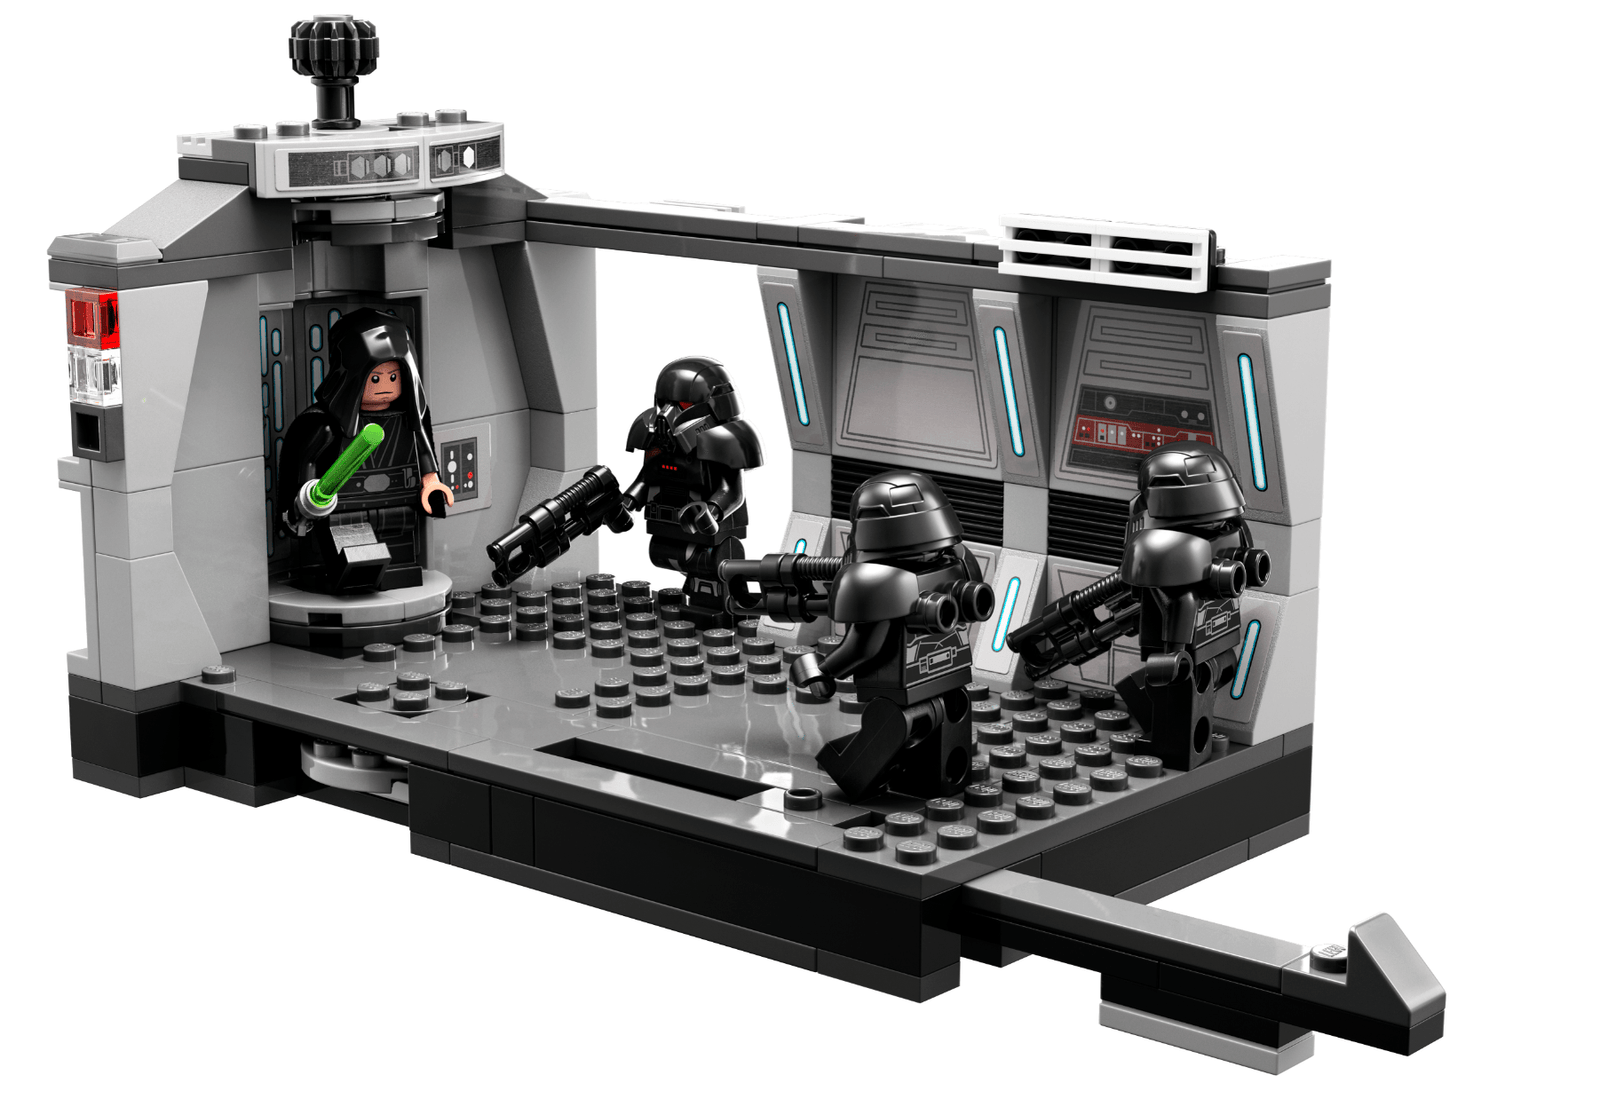 LEGO®  Star Wars - Dark Trooper™ Attack